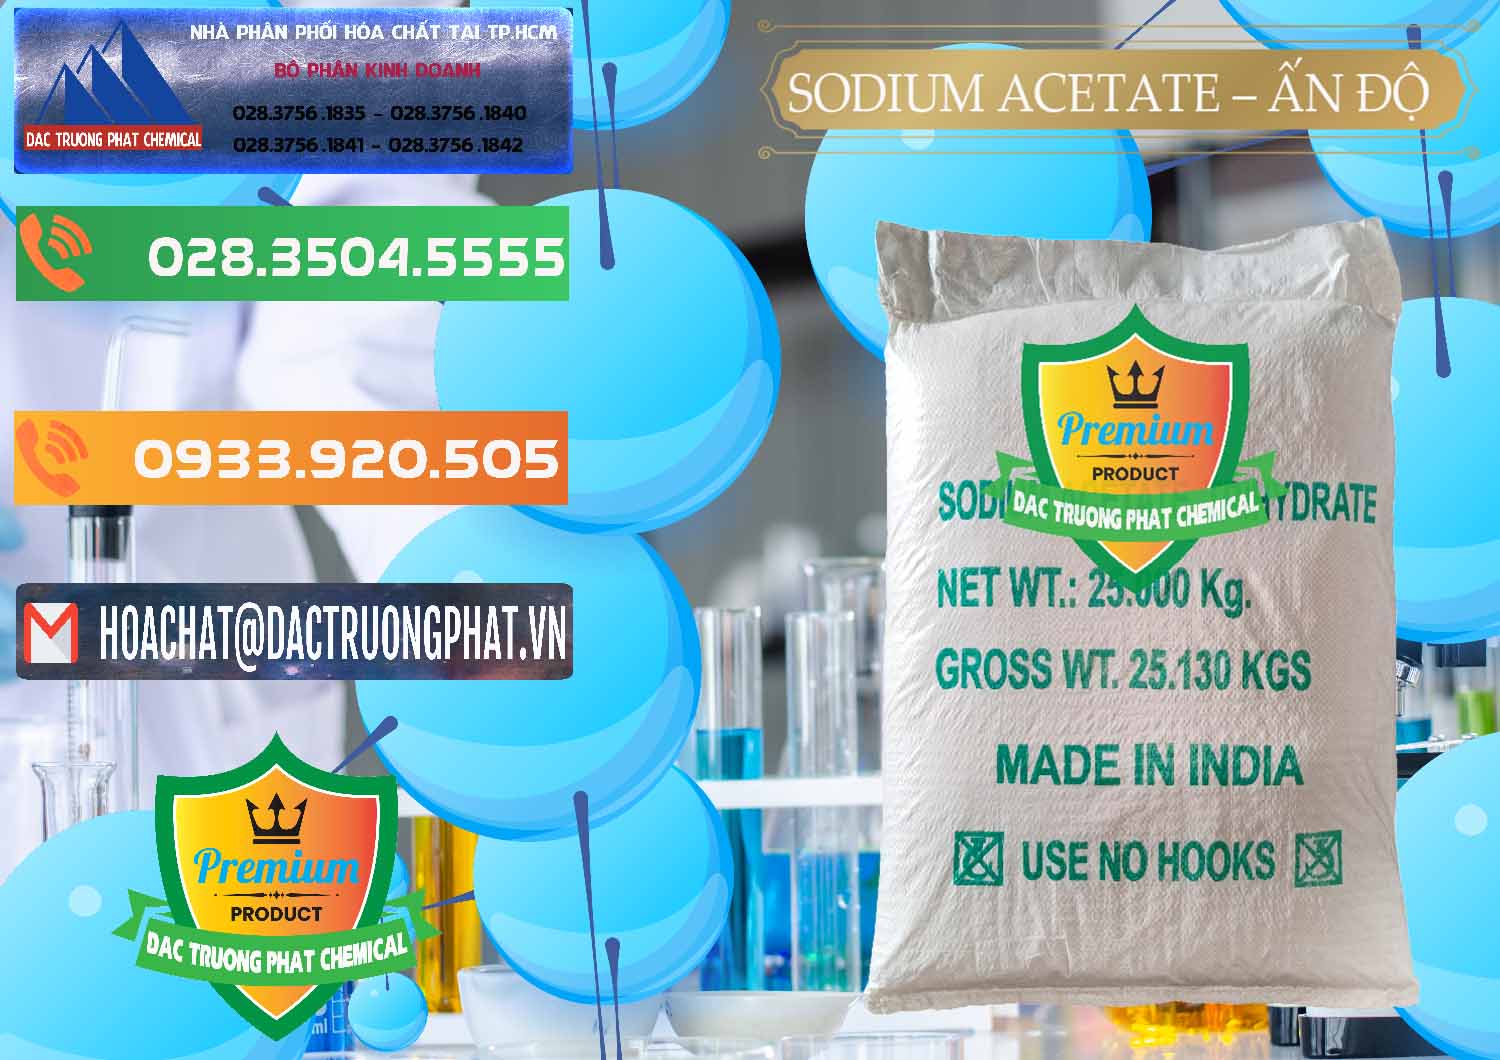 Đơn vị kinh doanh và bán Sodium Acetate - Natri Acetate Ấn Độ India - 0133 - Cty chuyên phân phối _ cung ứng hóa chất tại TP.HCM - hoachatxulynuoc.com.vn